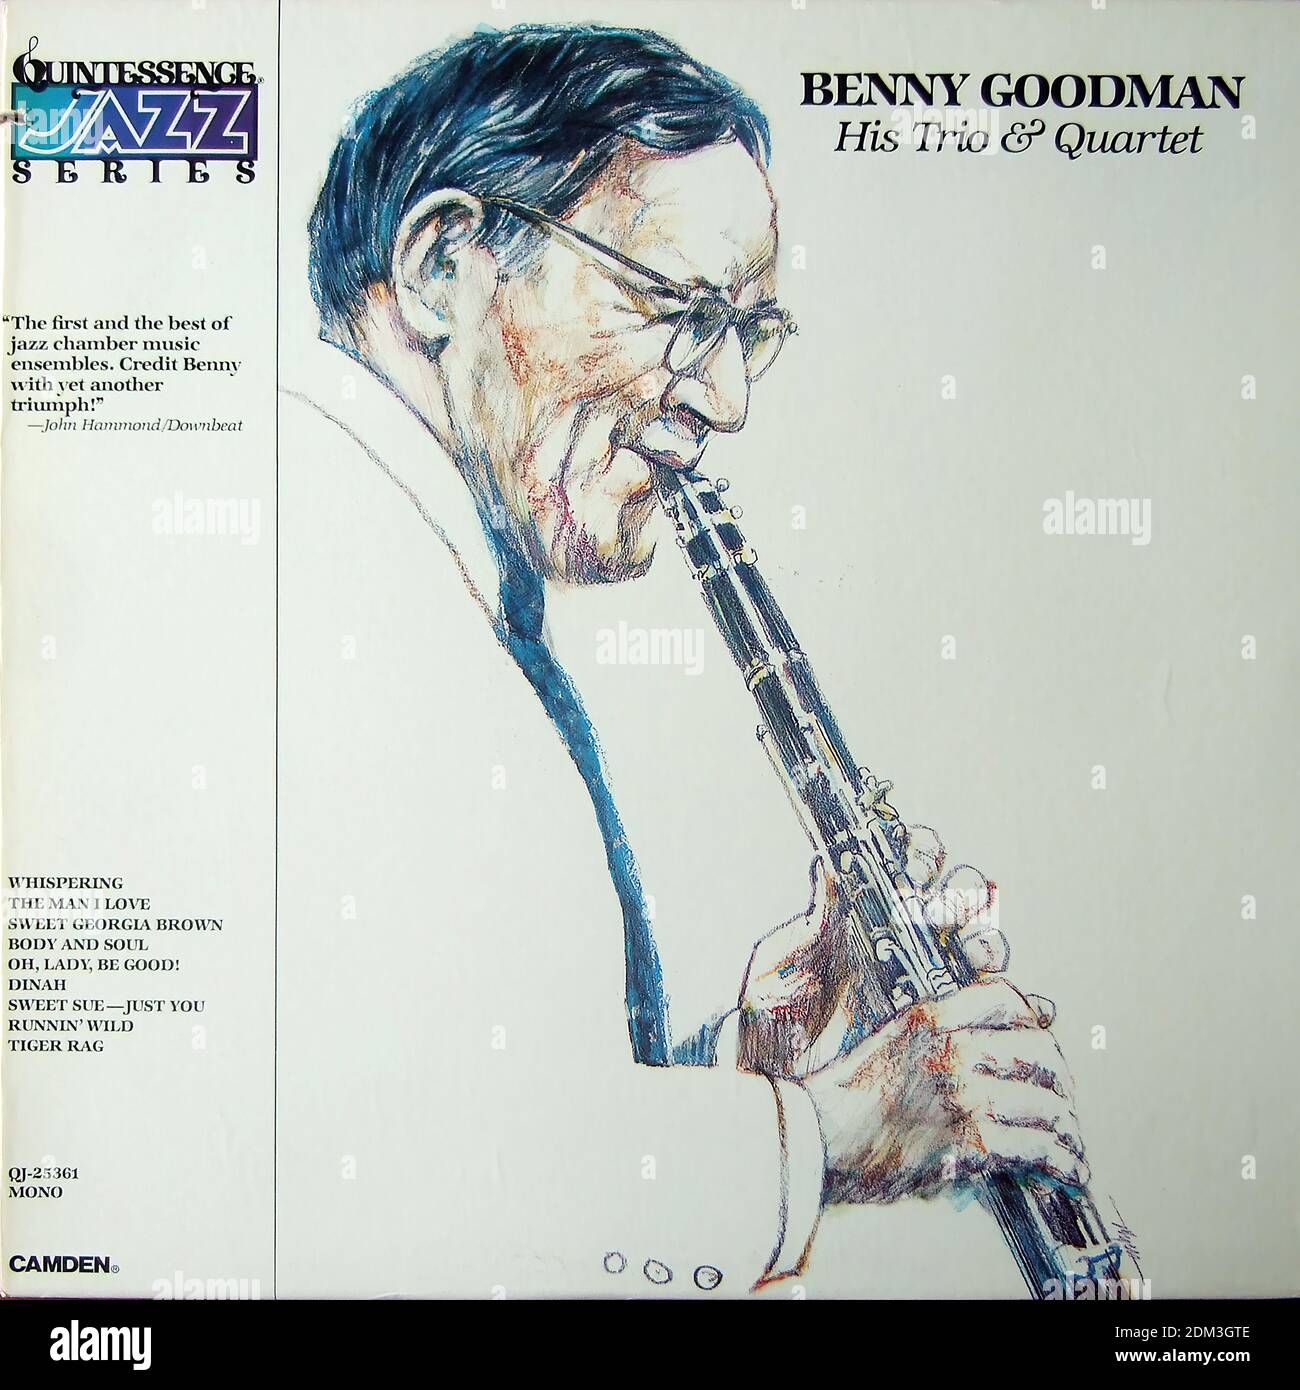 Benny Goodman, il suo Trio & Quartet, Quintessence Jazz Series QJ-25361 Mono - copertina di album in vinile d'epoca Foto Stock